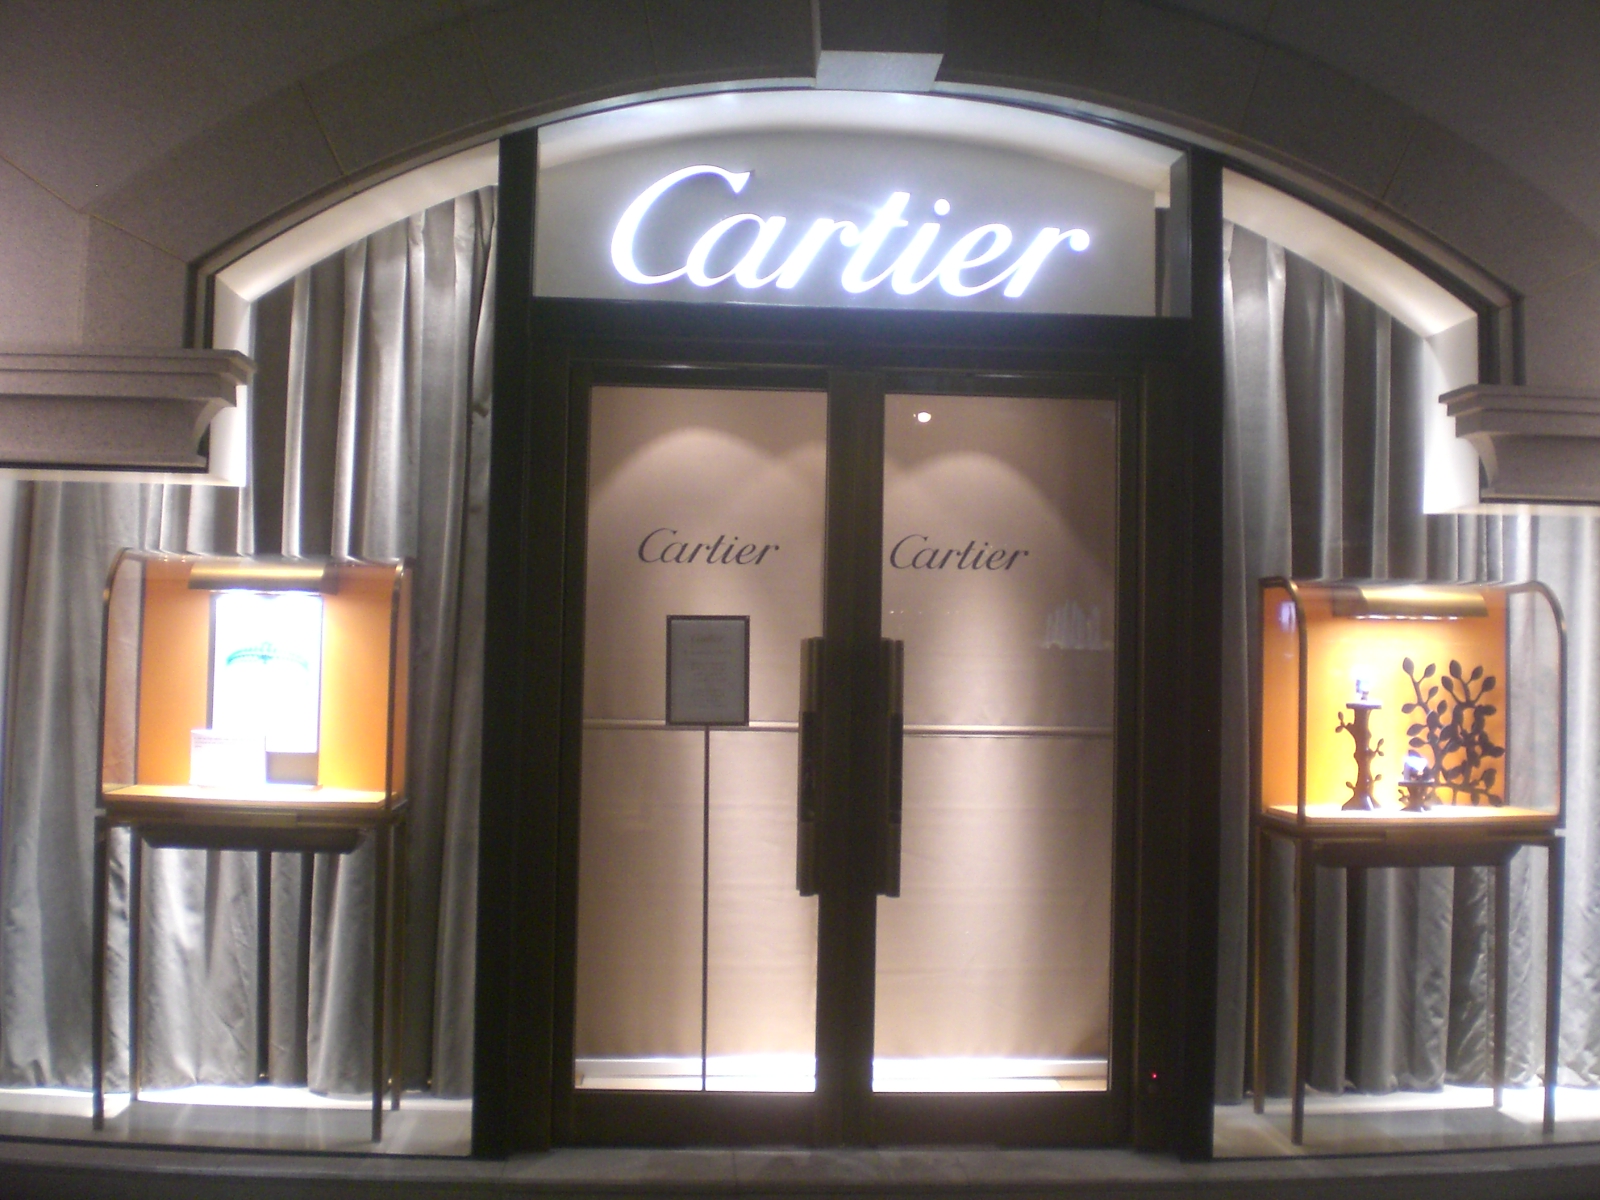 Johann Rupert propriétaire de Cartier